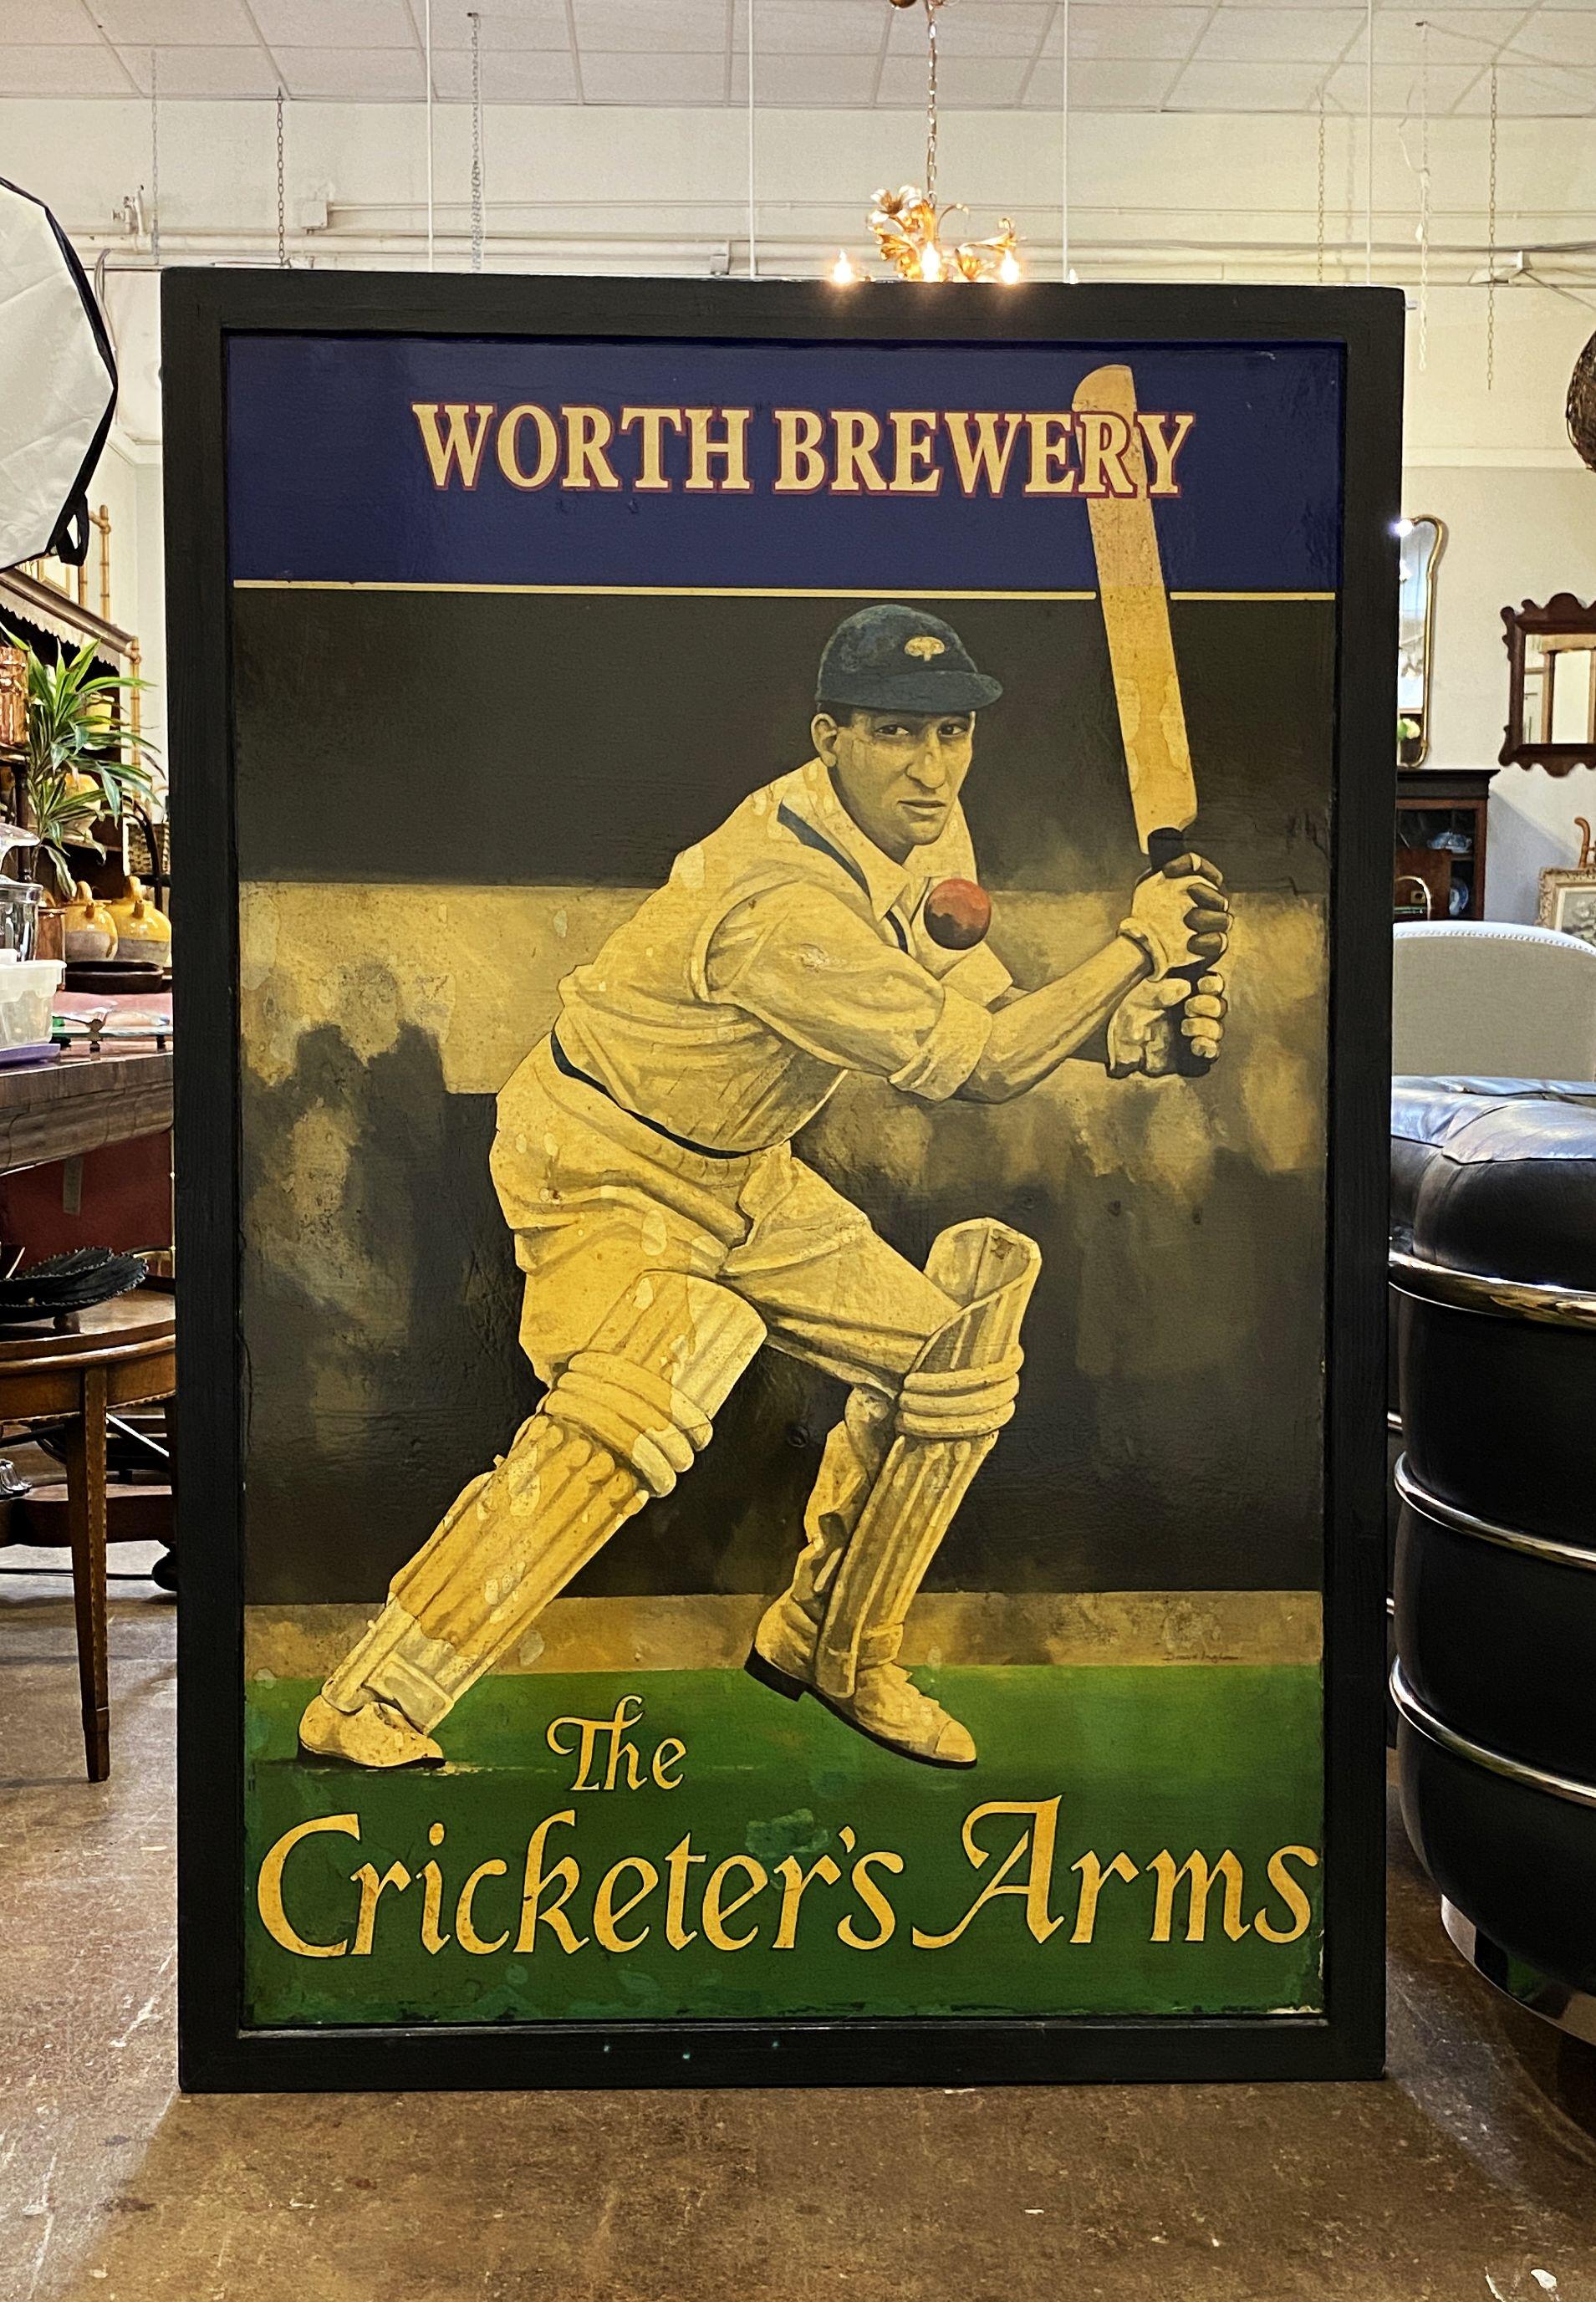 Ein authentisches englisches Pub-Schild (einseitig) mit dem Bild eines Kricketspielers mit Schläger und Ball und dem Titel: Worth Brewery - The Cricketer's Arms.

Ein sehr schönes Beispiel für eine alte Werbegrafik, bereit für die Ausstellung.

